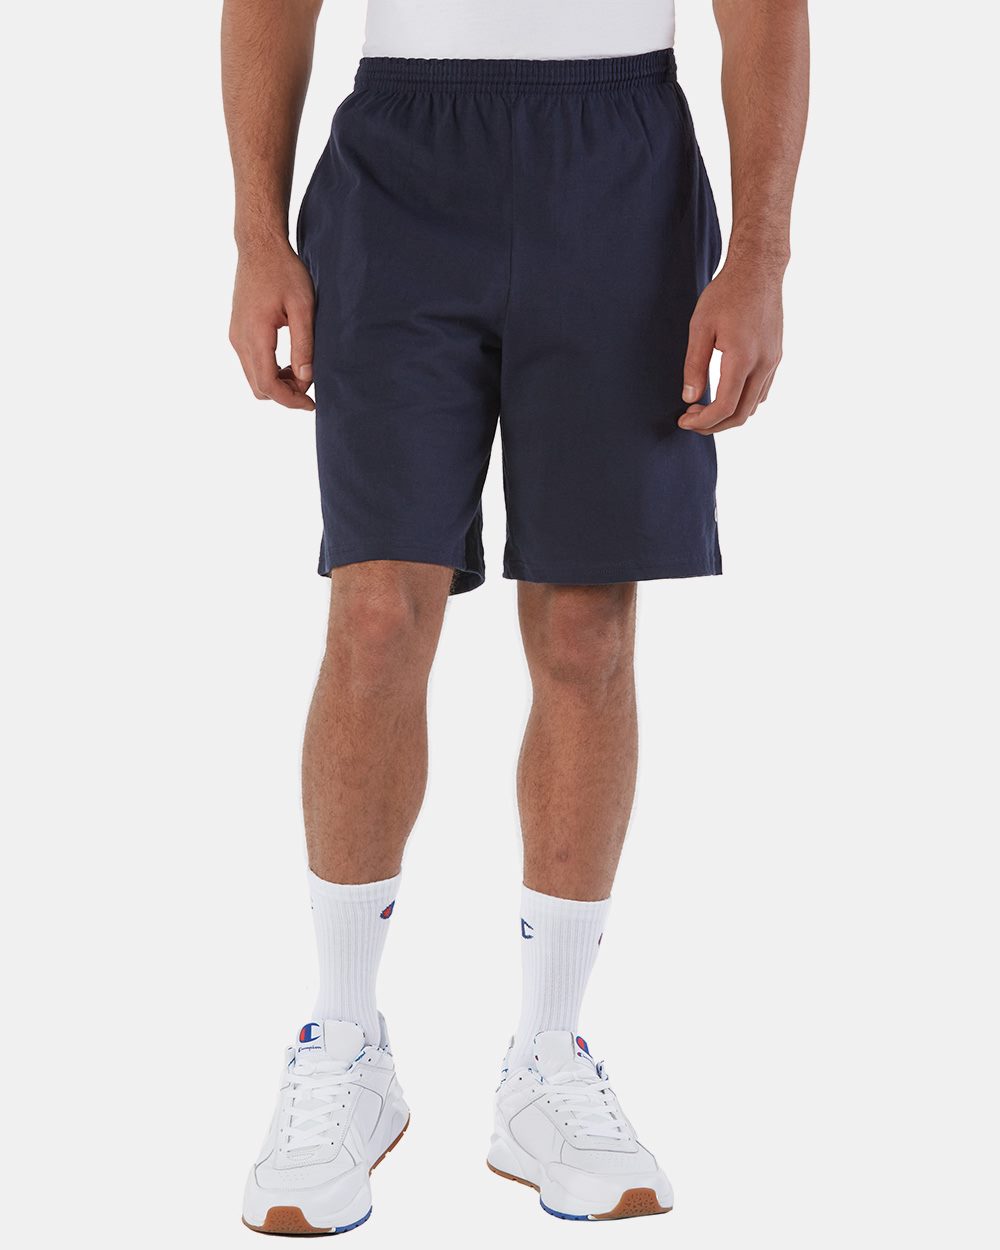 navy champion shorts